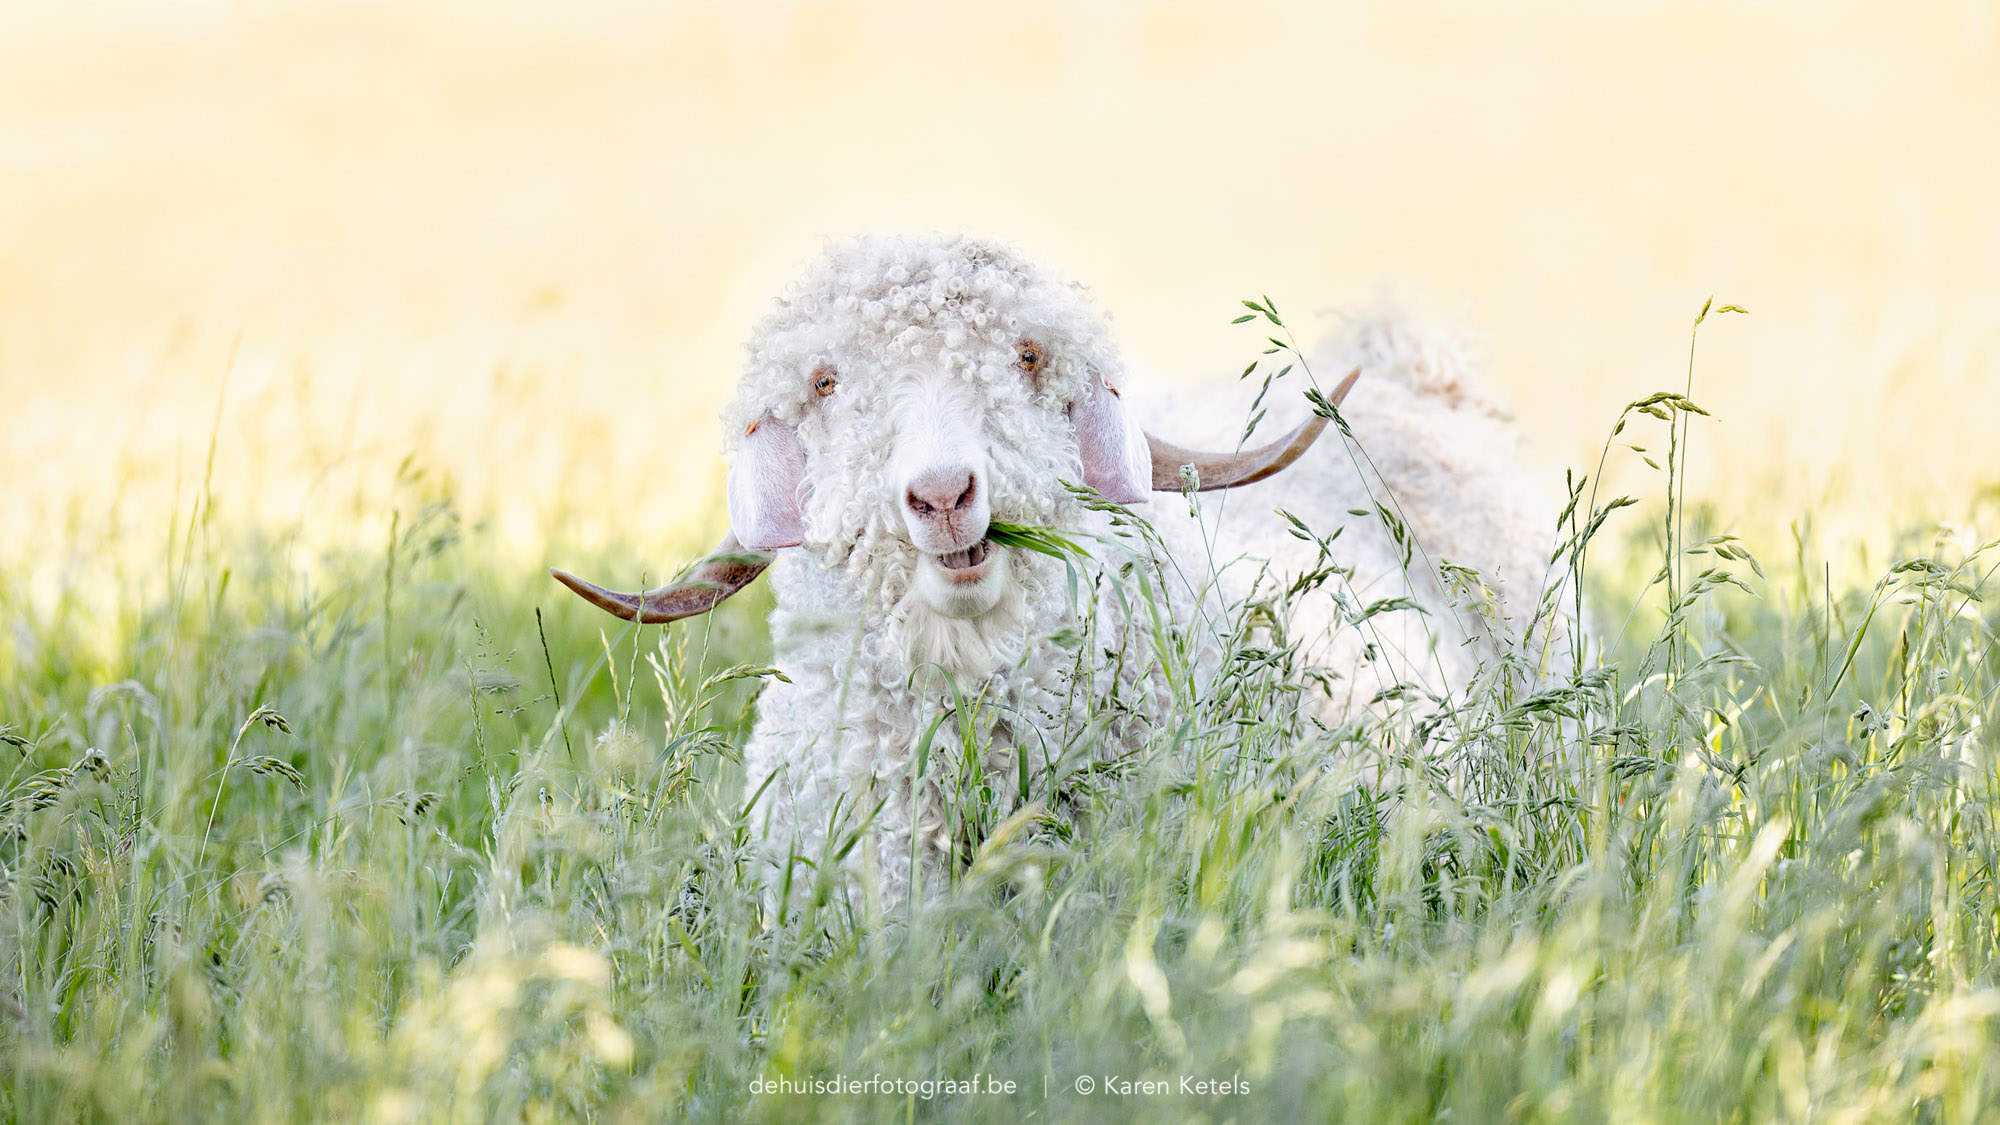 Portret van een vrolijke Angora-geitenbok in de wei, door De Huisdierfotograaf